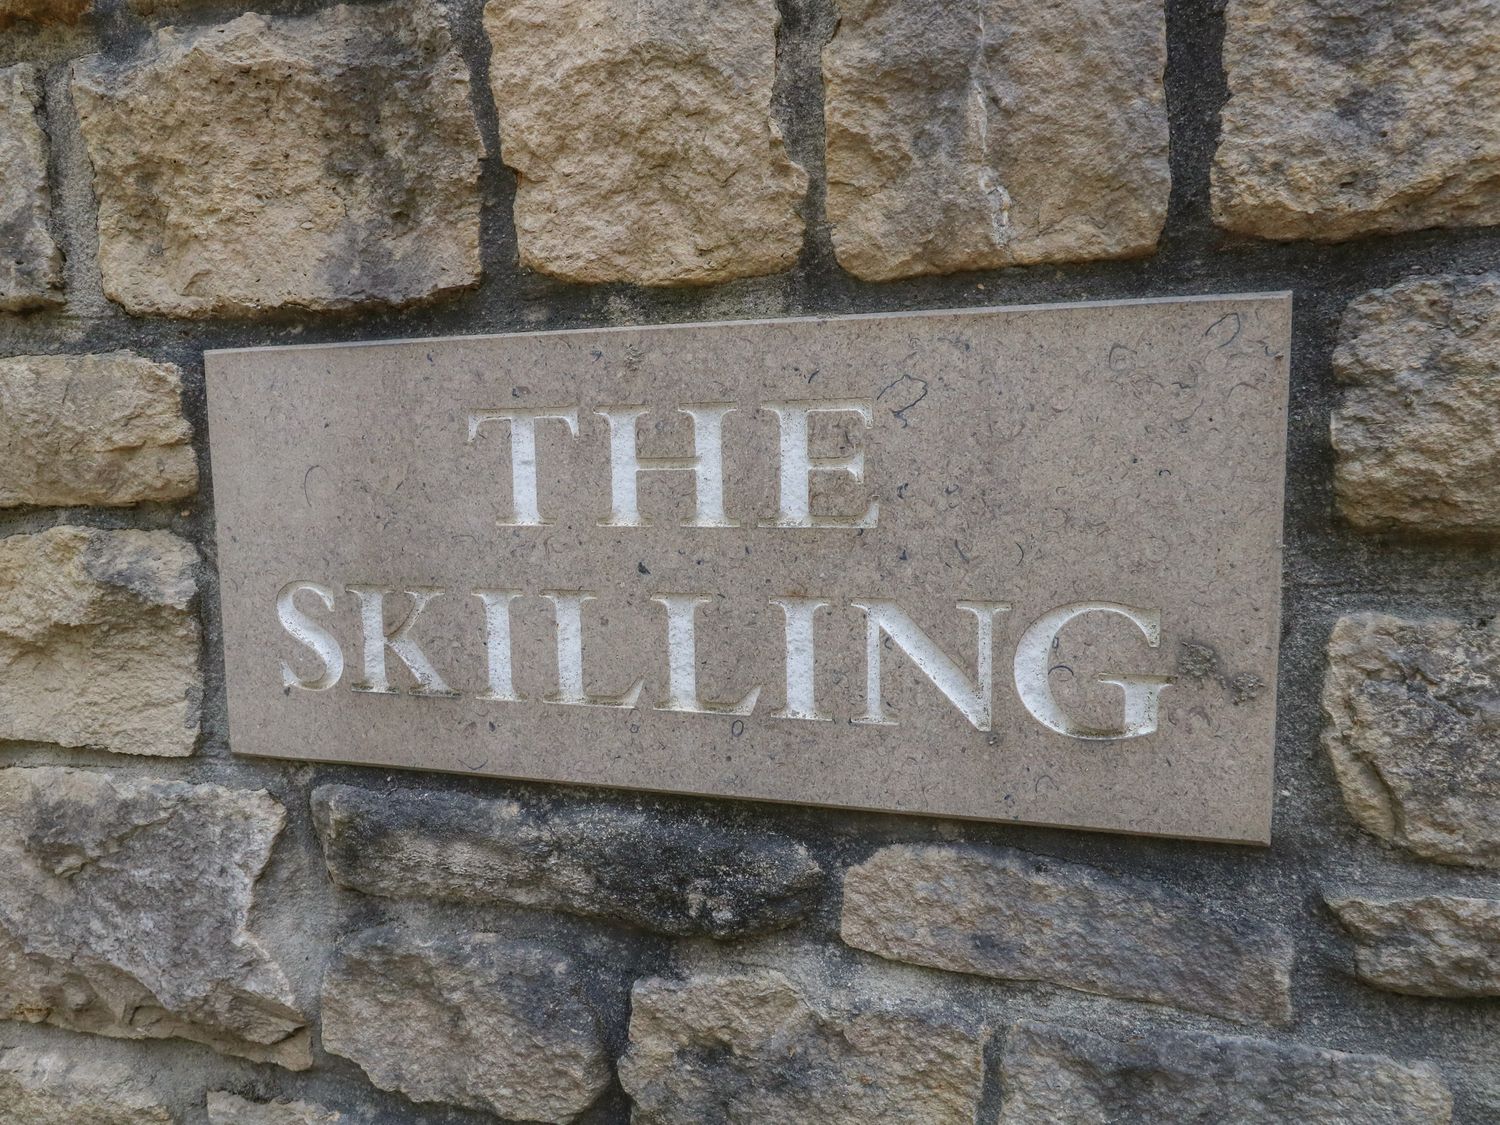 The Skilling, Bridport